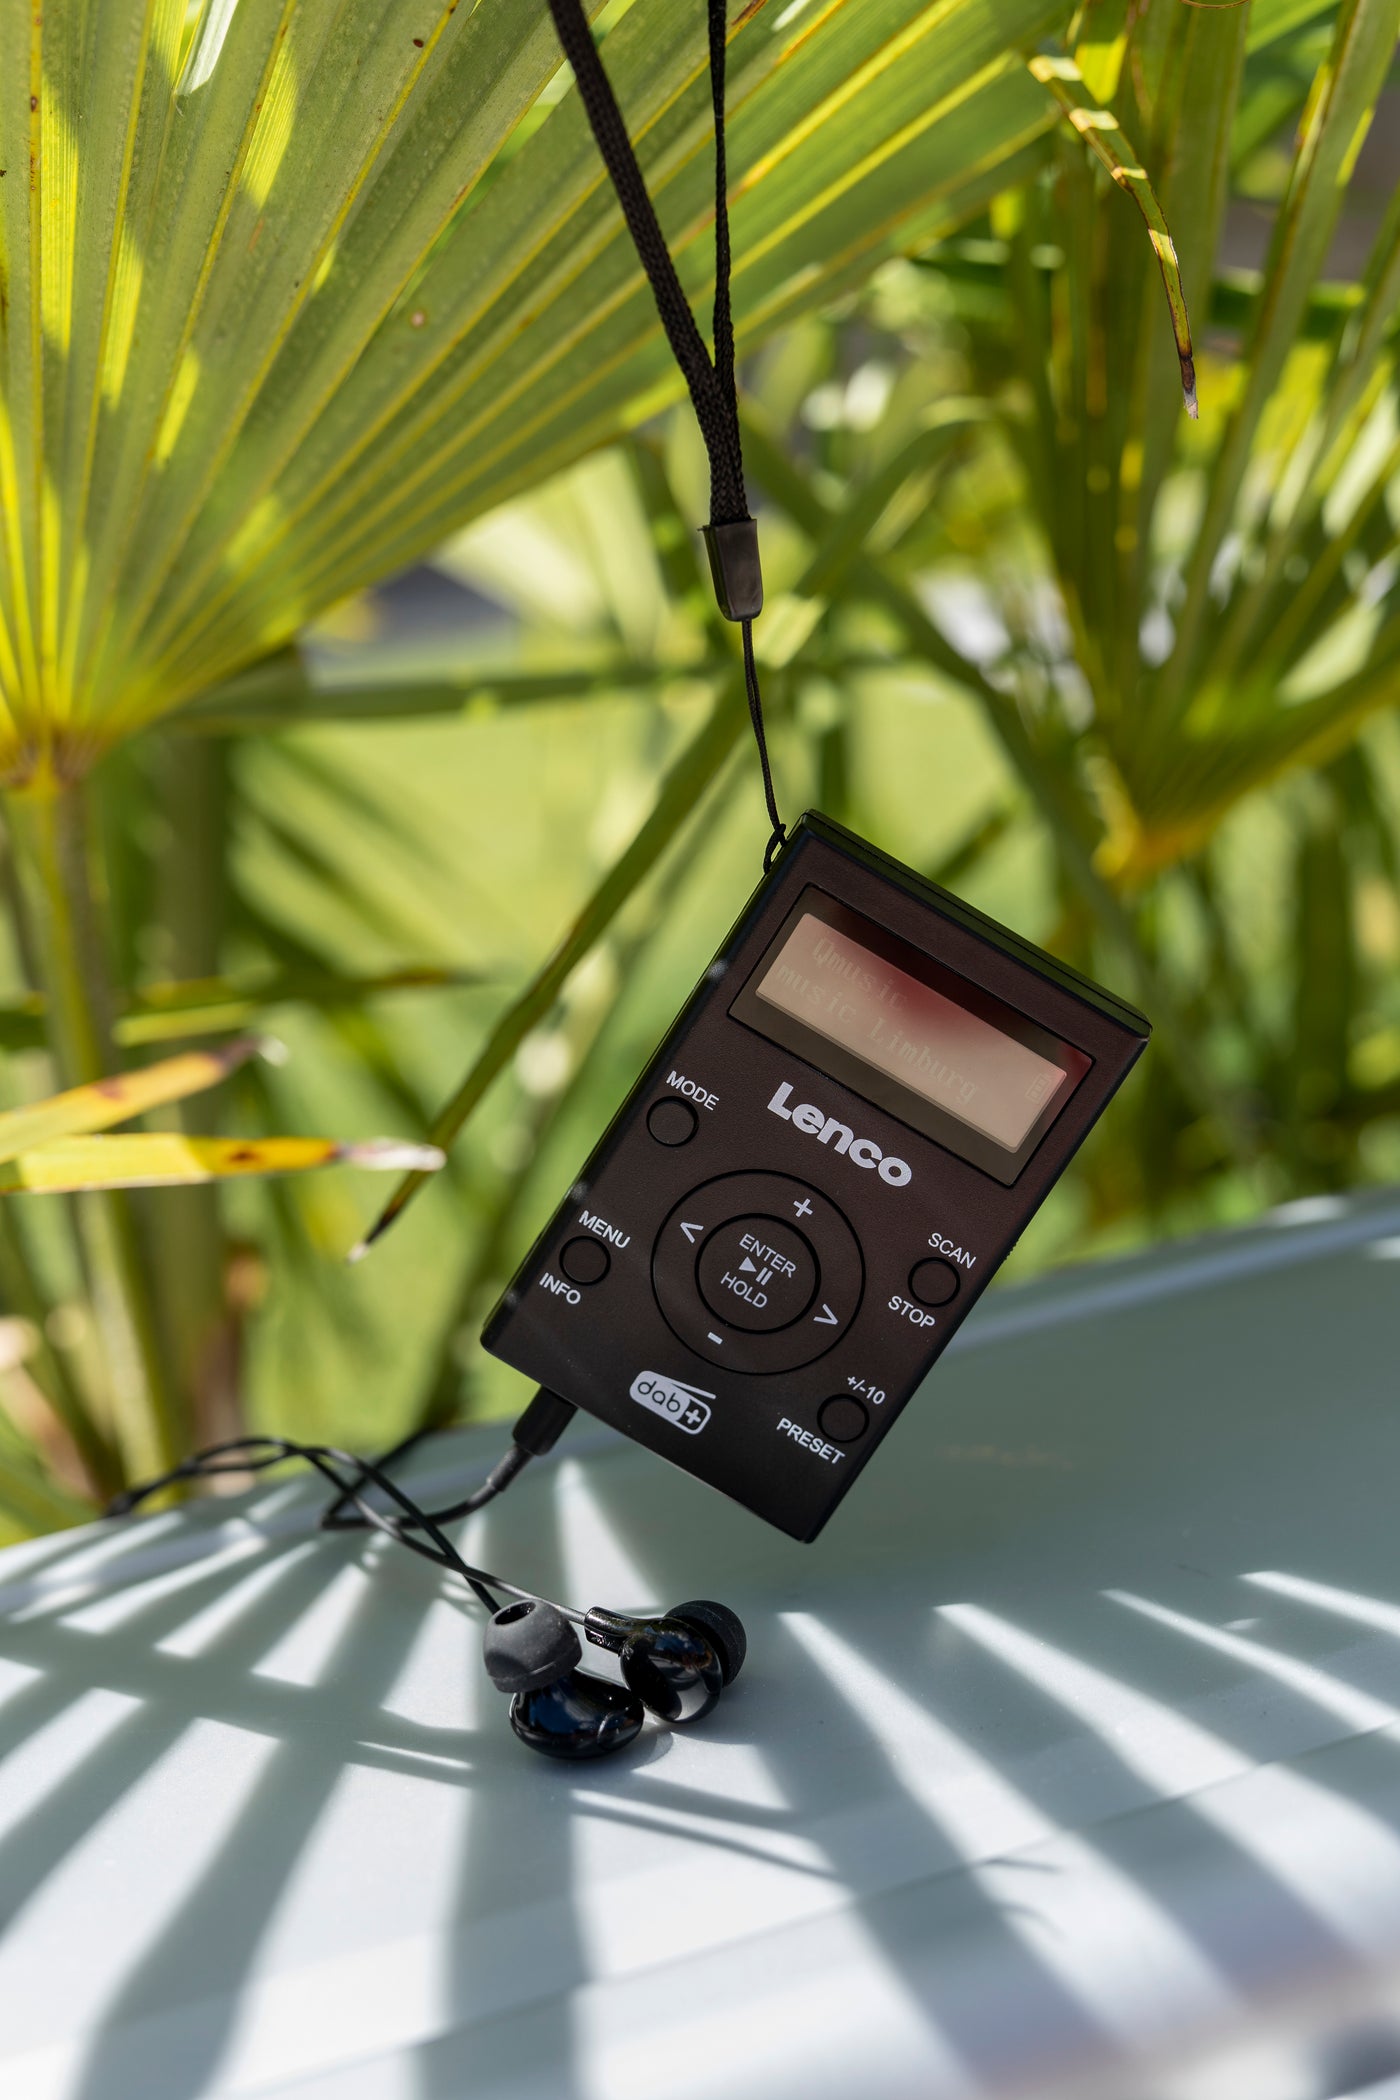 LENCO PDR-011BK - Kieszonkowe radio DAB+/FM i odtwarzacz MP3